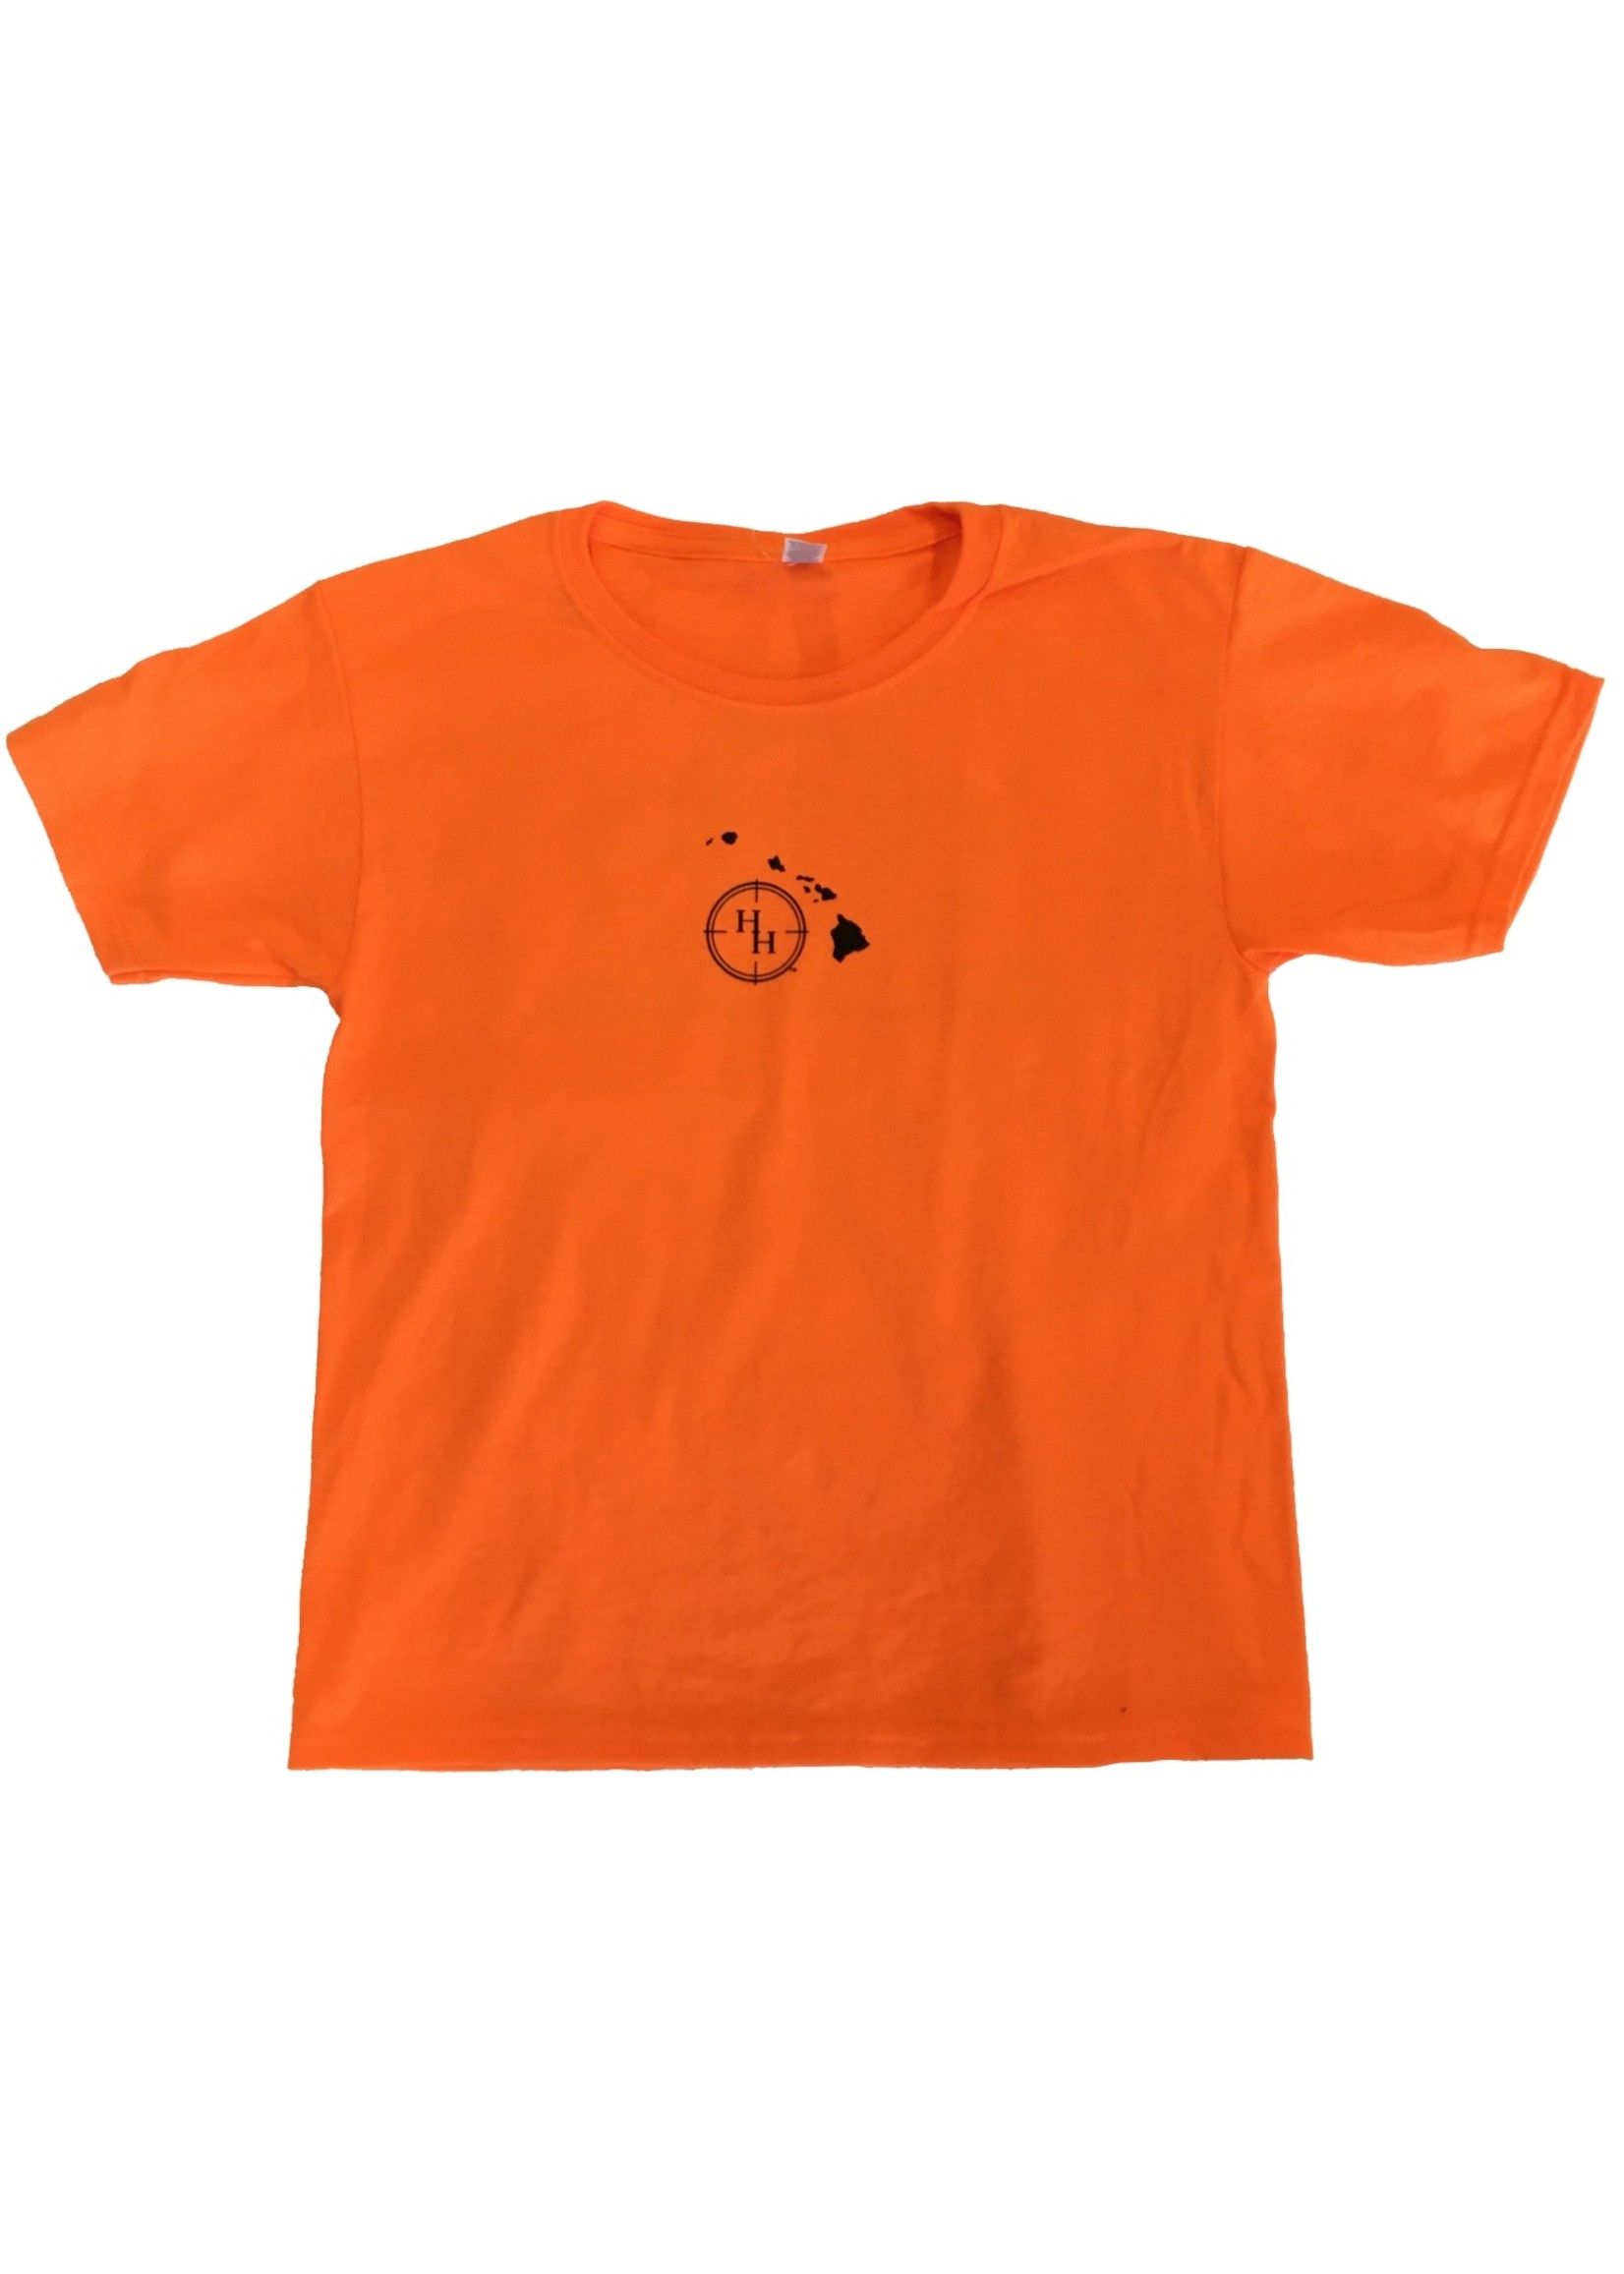 Youth,  Safety Orange Shirt